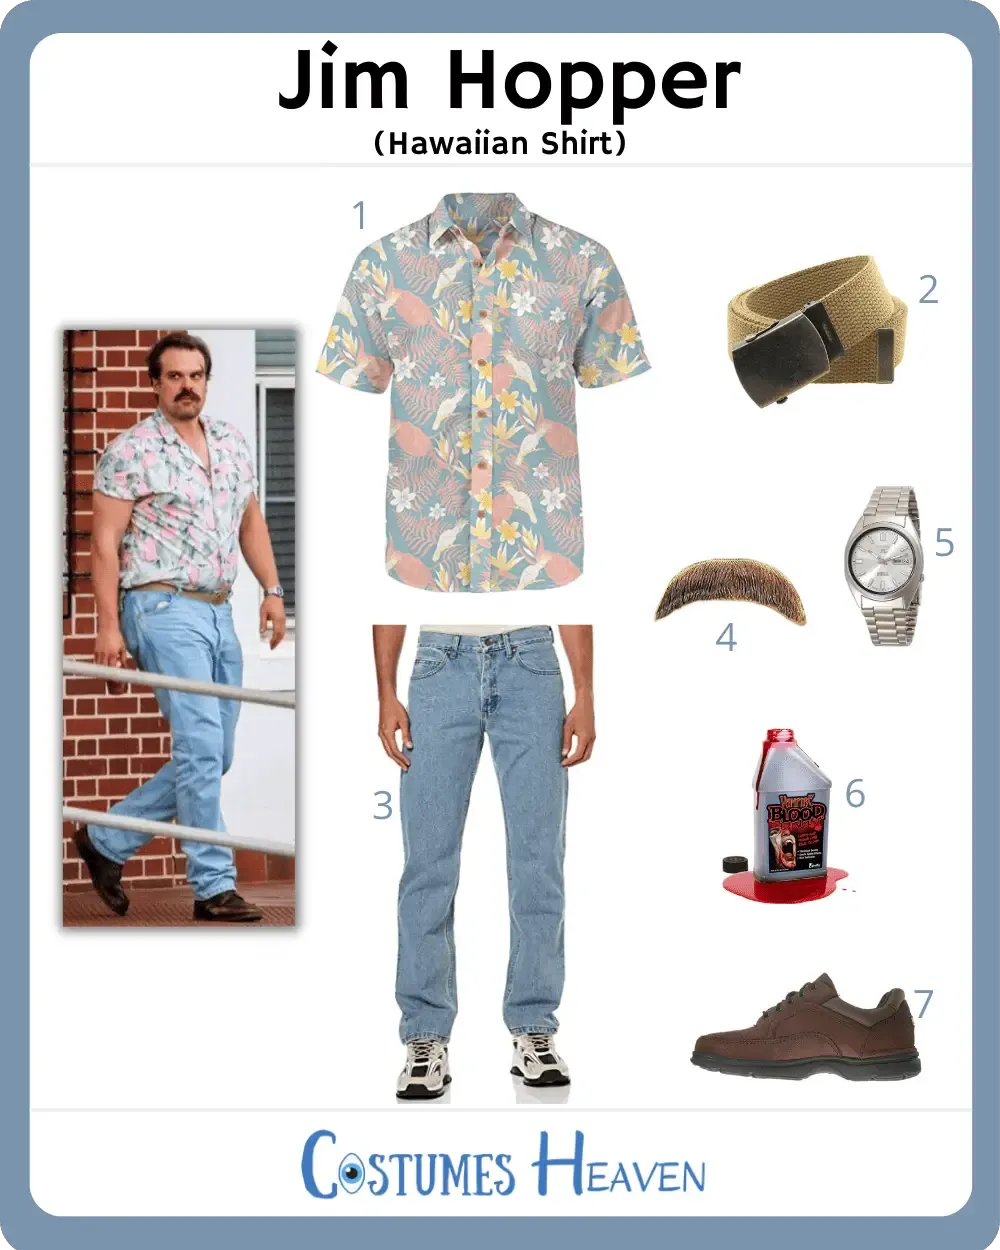 Jim Hopper (Hawaiian Shirt) Costume